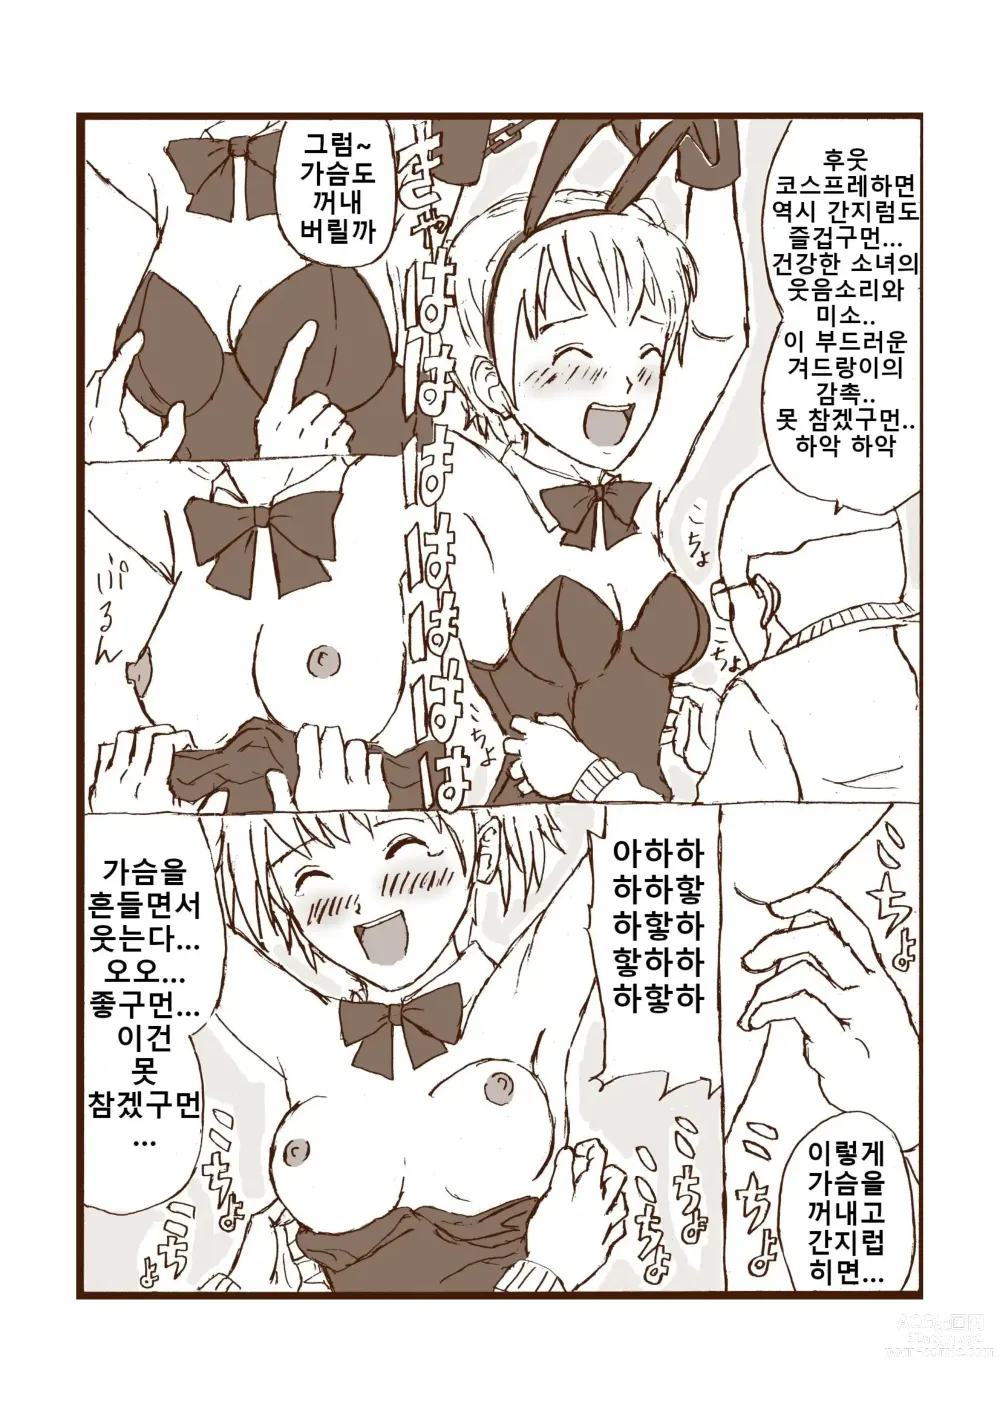 Page 21 of doujinshi 웃는 봉사활동